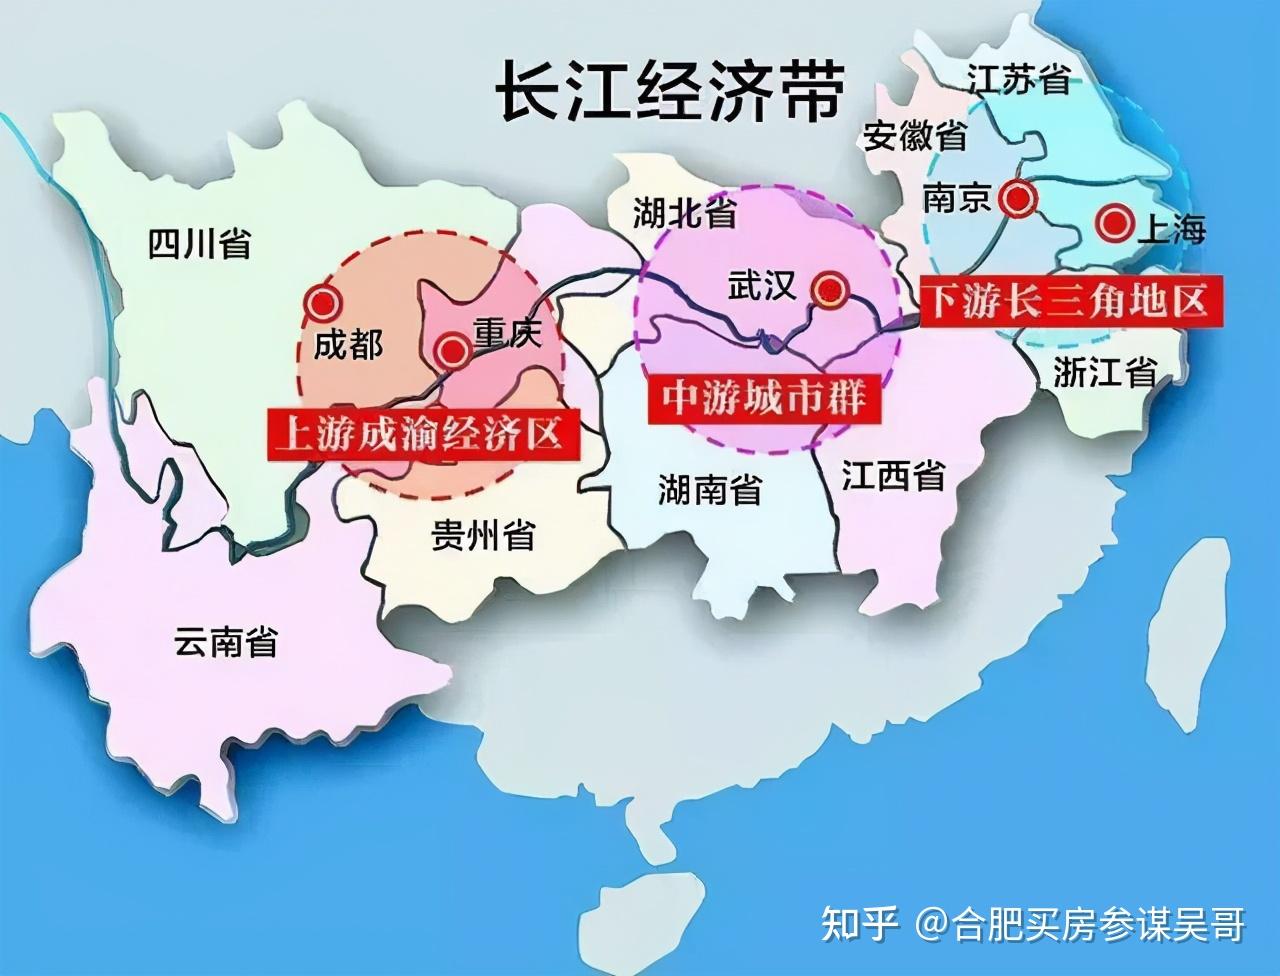 目前长三角已形成以上海为中心,南京,杭州,合肥为副中心的城市格局